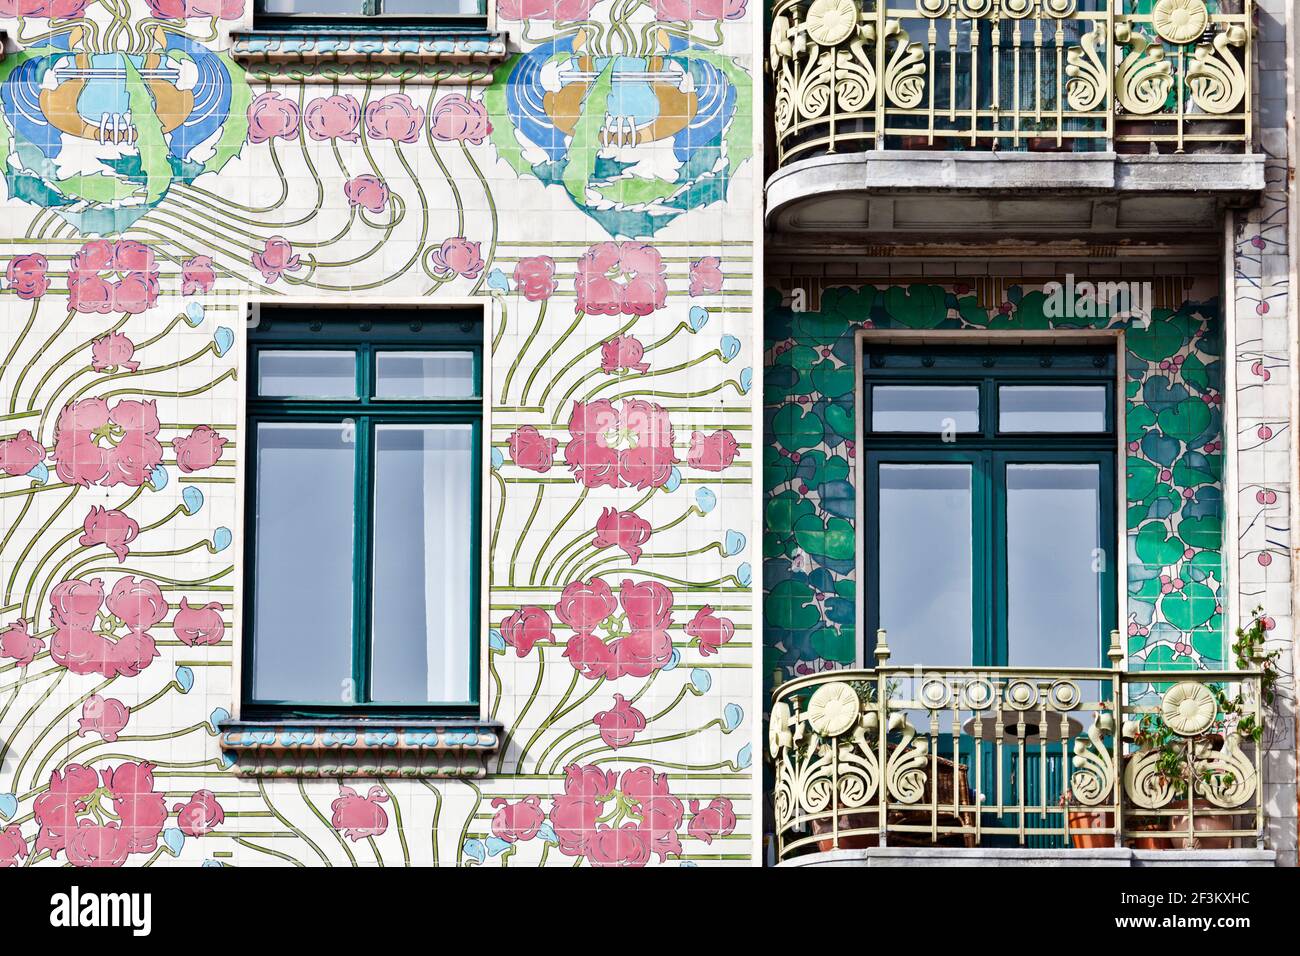 Façade de la Maison Jugendstil Majolikahaus (majolica) au n° 40 Linke Wienzeile (1899), Vienne, Autriche Banque D'Images